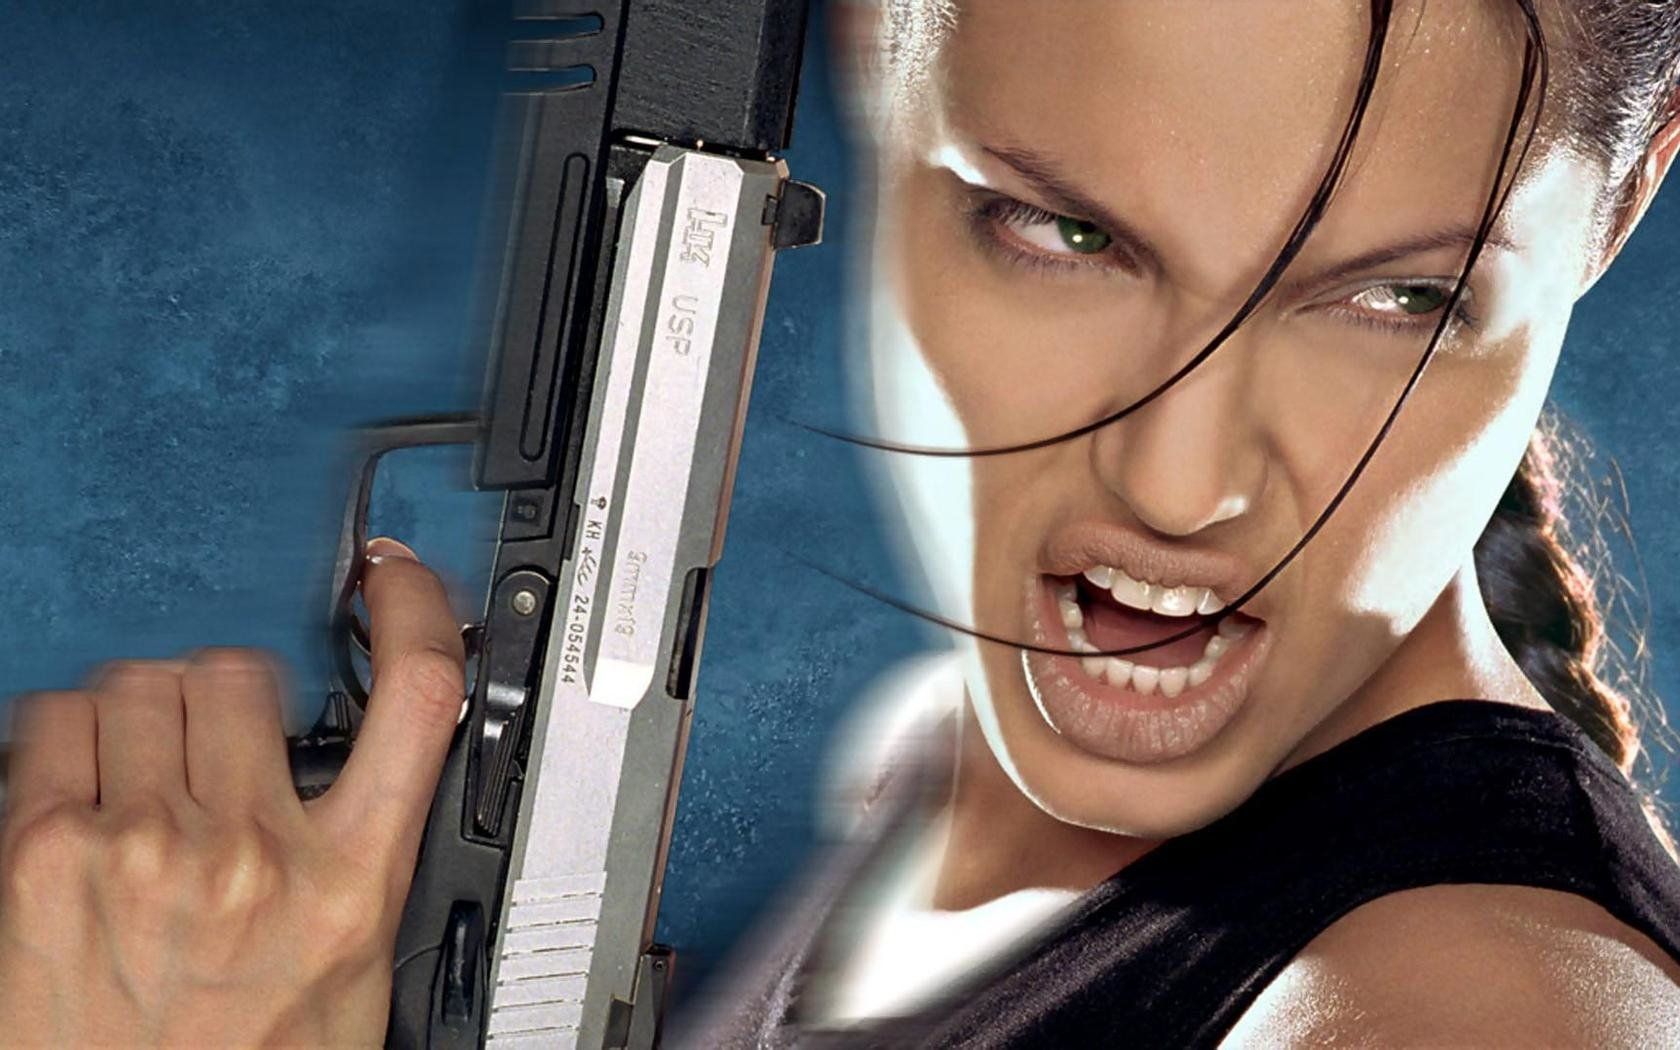 Lara Croft: Tomb Raider Wallpaper and Background Imagex1050